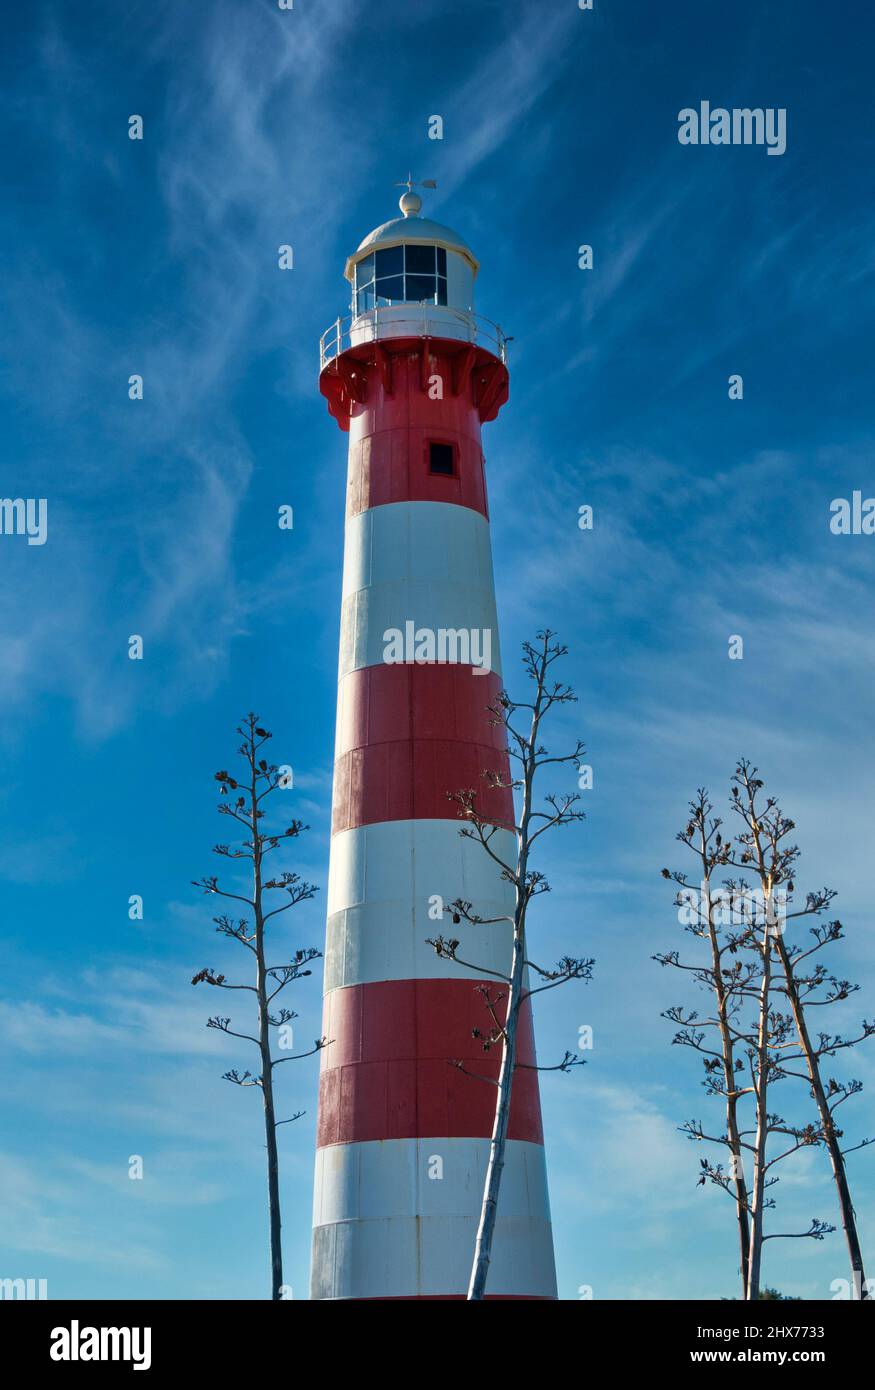 L'emblématique structure de sécurité maritime rouge et blanc de Geraldton, en Australie occidentale, connue sous le nom de Port Moore Lighthouse avec des tiges en sisal au premier plan. Banque D'Images